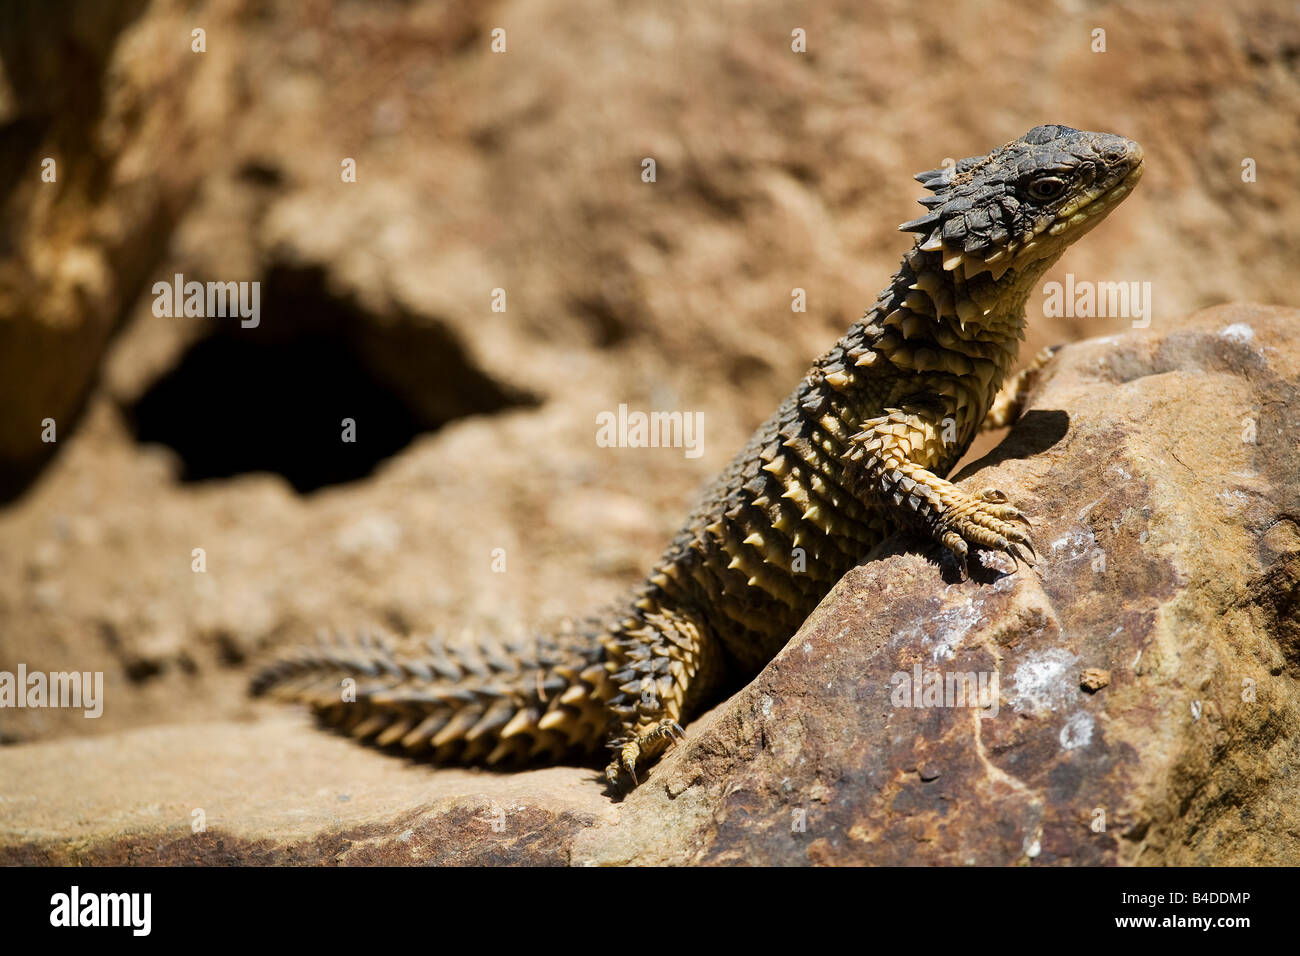 Giant Girdled Lizard (Cordylus giganteus) Stock Photo